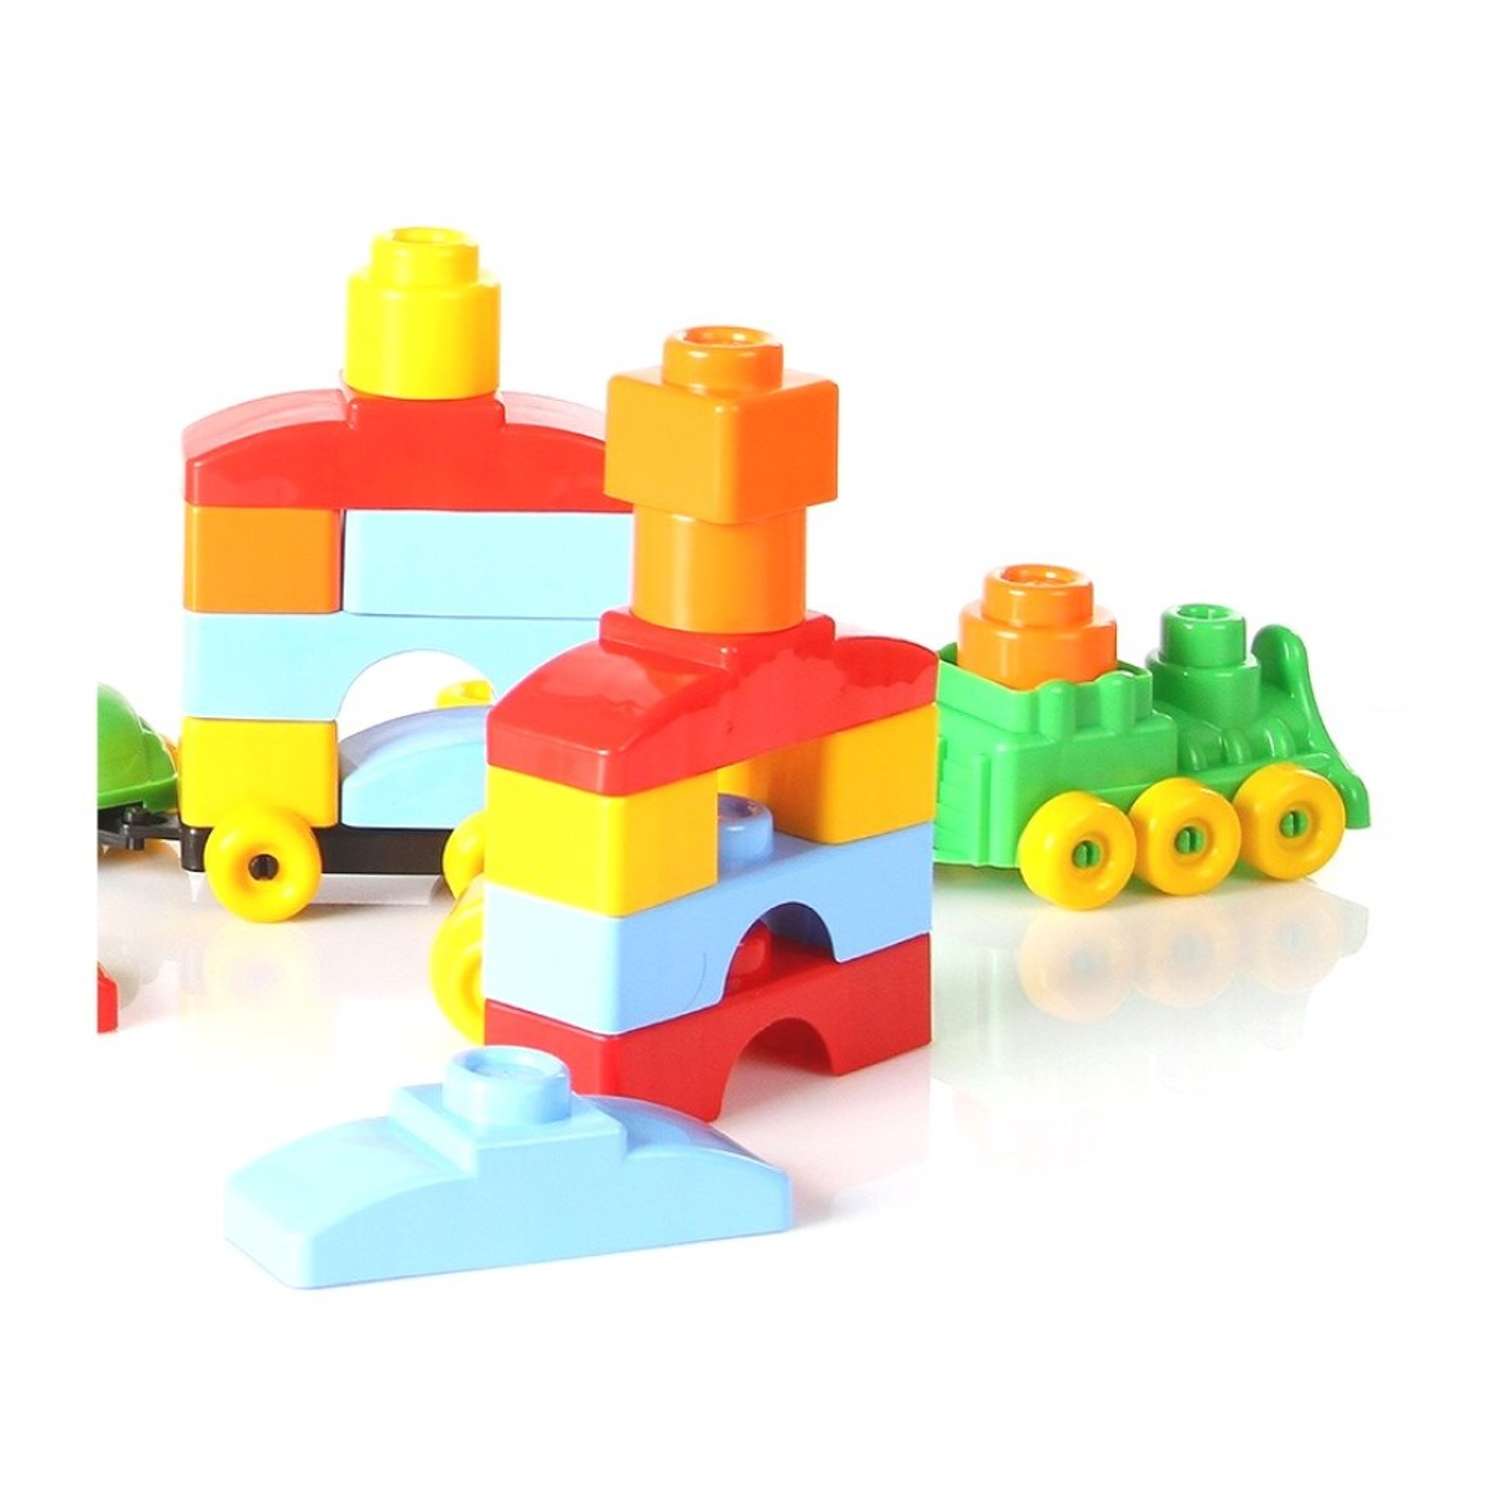 Развивающие игрушки БИПЛАНТ конструктор для малышей Кноп-Кнопыч 114 деталей + Сортер кубик малый + Команда КВА - фото 4